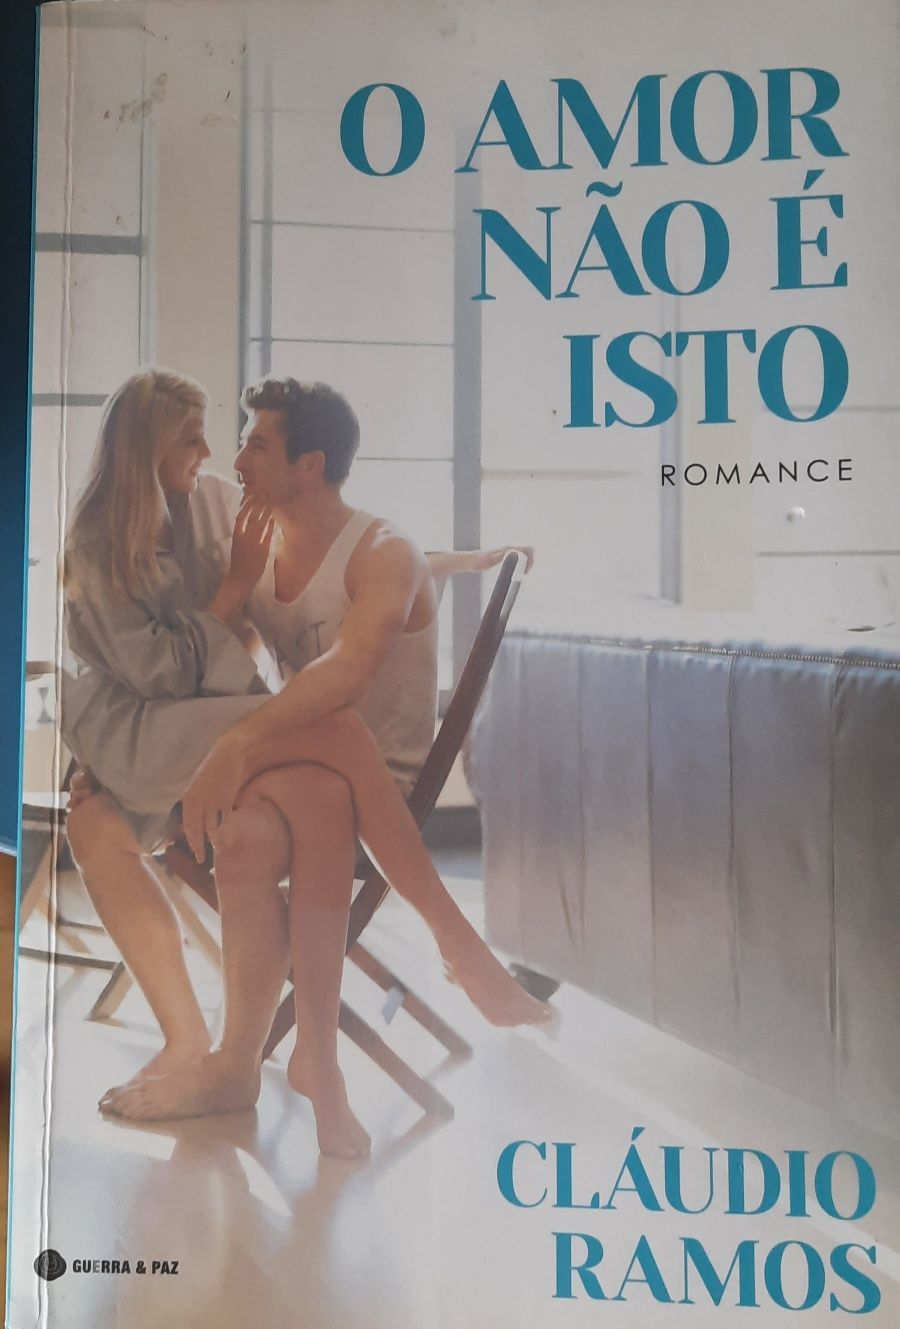 Livro "O amor não  é isto " de Cláudio Ramos